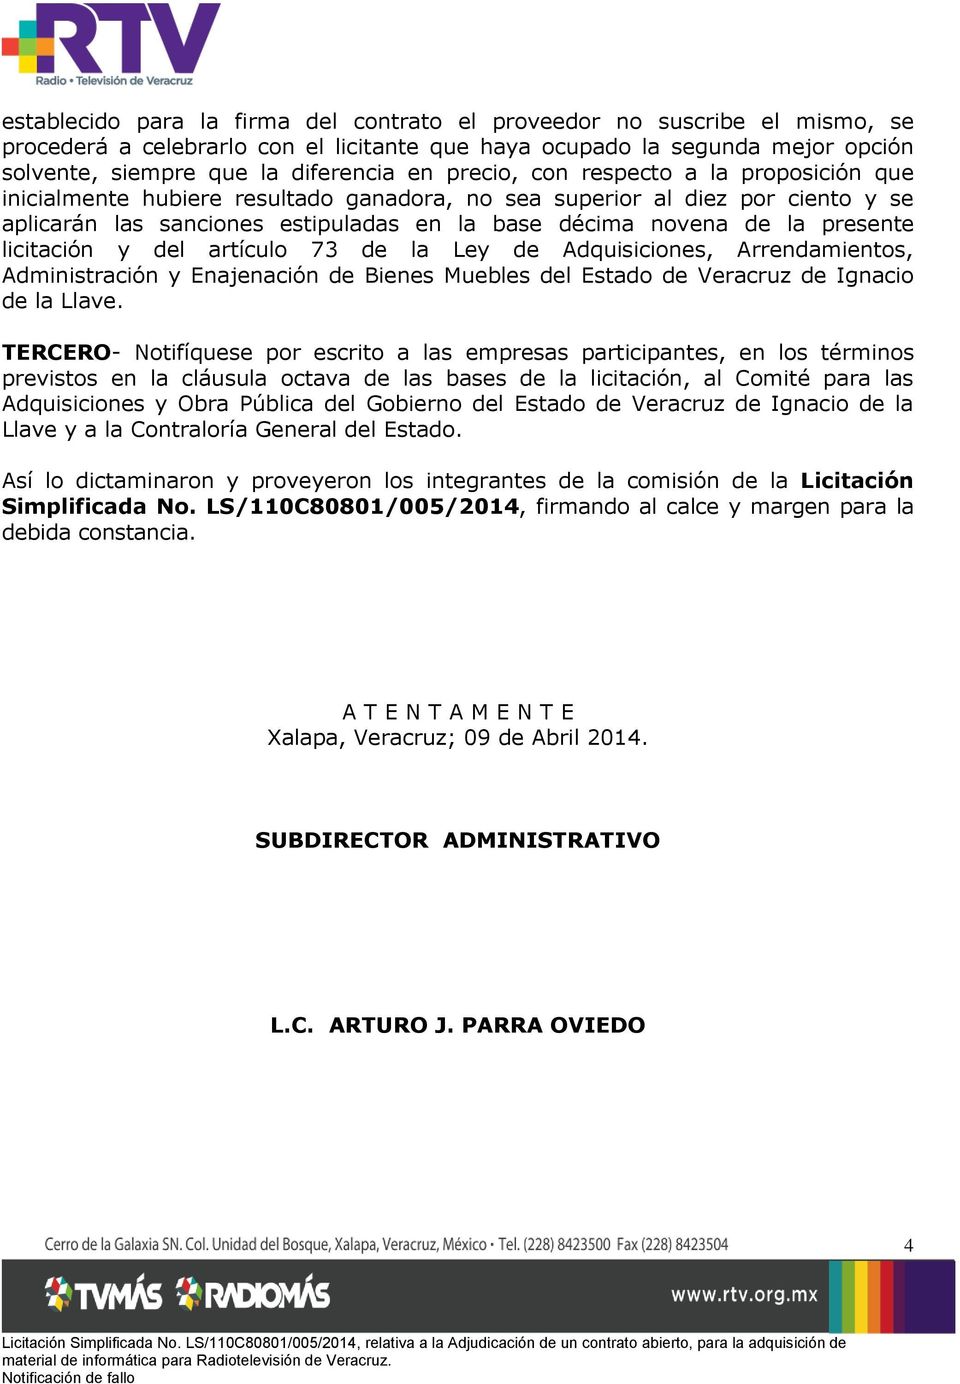 licitación y del artículo 73 de la Ley de Adquisiciones, Arrendamientos, Administración y Enajenación de Bienes Muebles del Estado de Veracruz de Ignacio de la Llave.